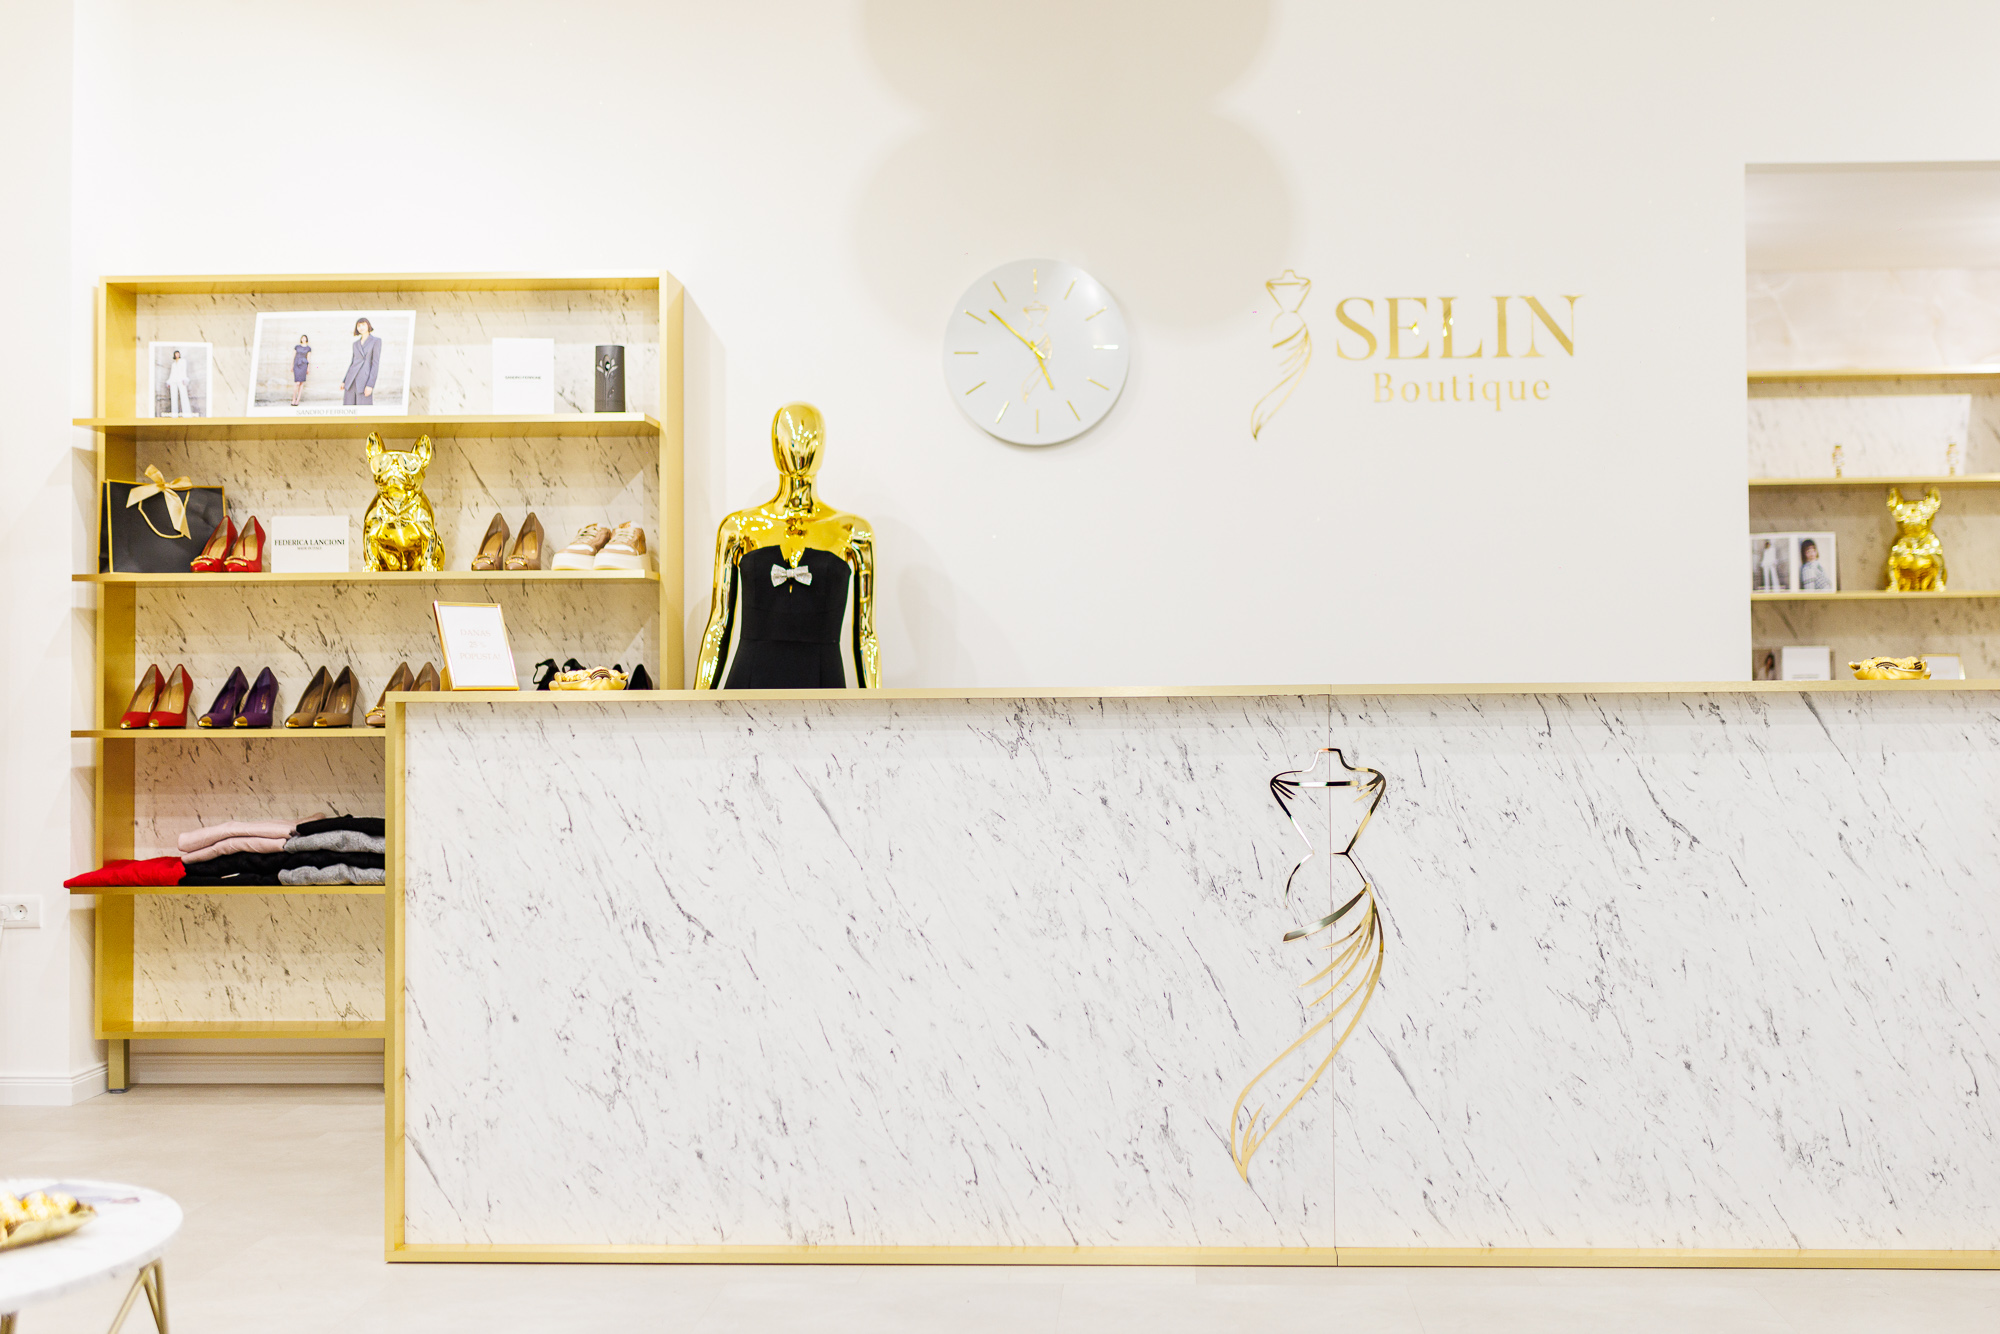 U centru Rijeke otvorena nova modna adresa – Selin boutique